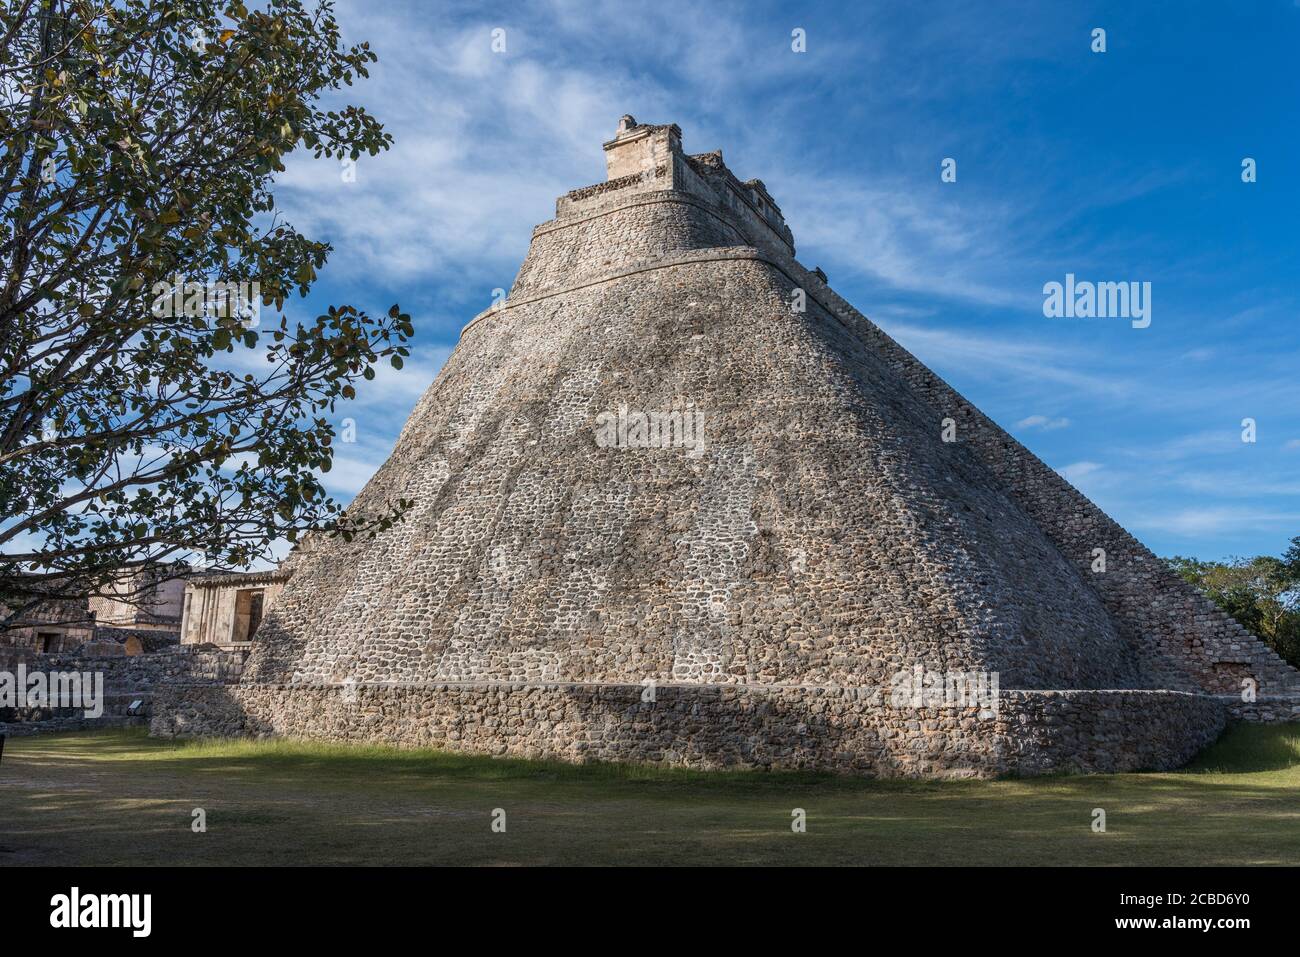 Die Pyramide des Magiers, auch bekannt als die Pyramide des Zwerges, ist das höchste Bauwerk in den prähispanischen Maya-Ruinen von Uxmal, Mexiko, das aufsteigt Stockfoto